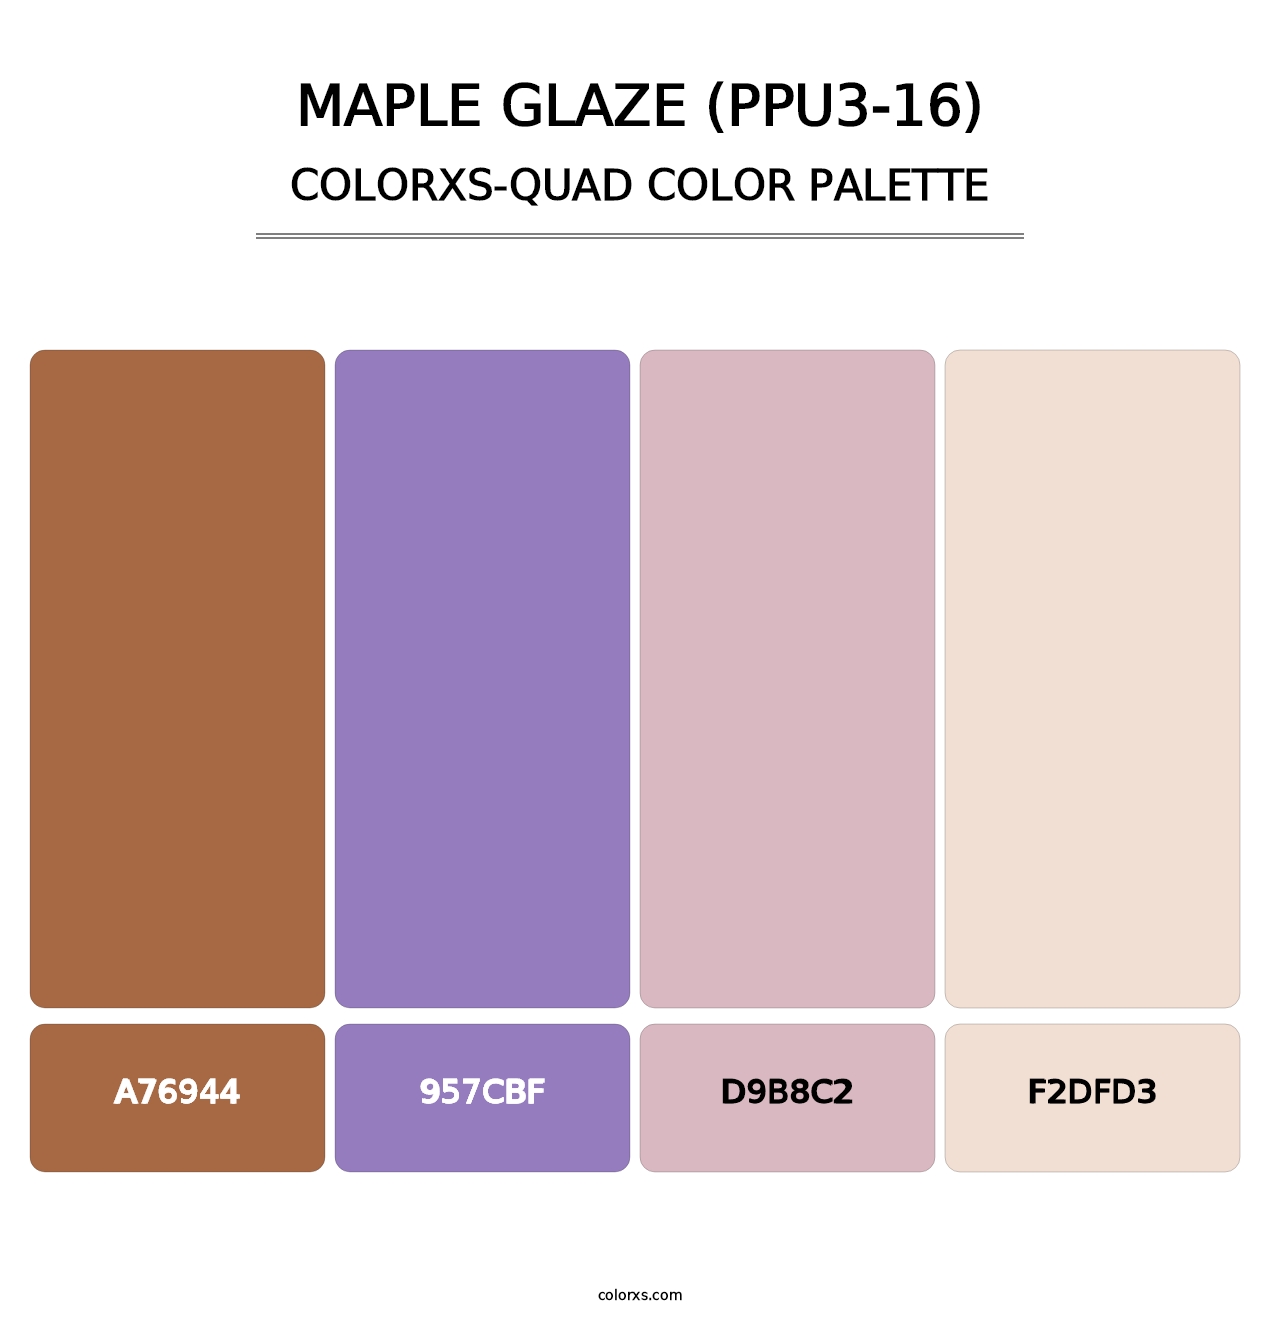 Maple Glaze (PPU3-16) - Colorxs Quad Palette